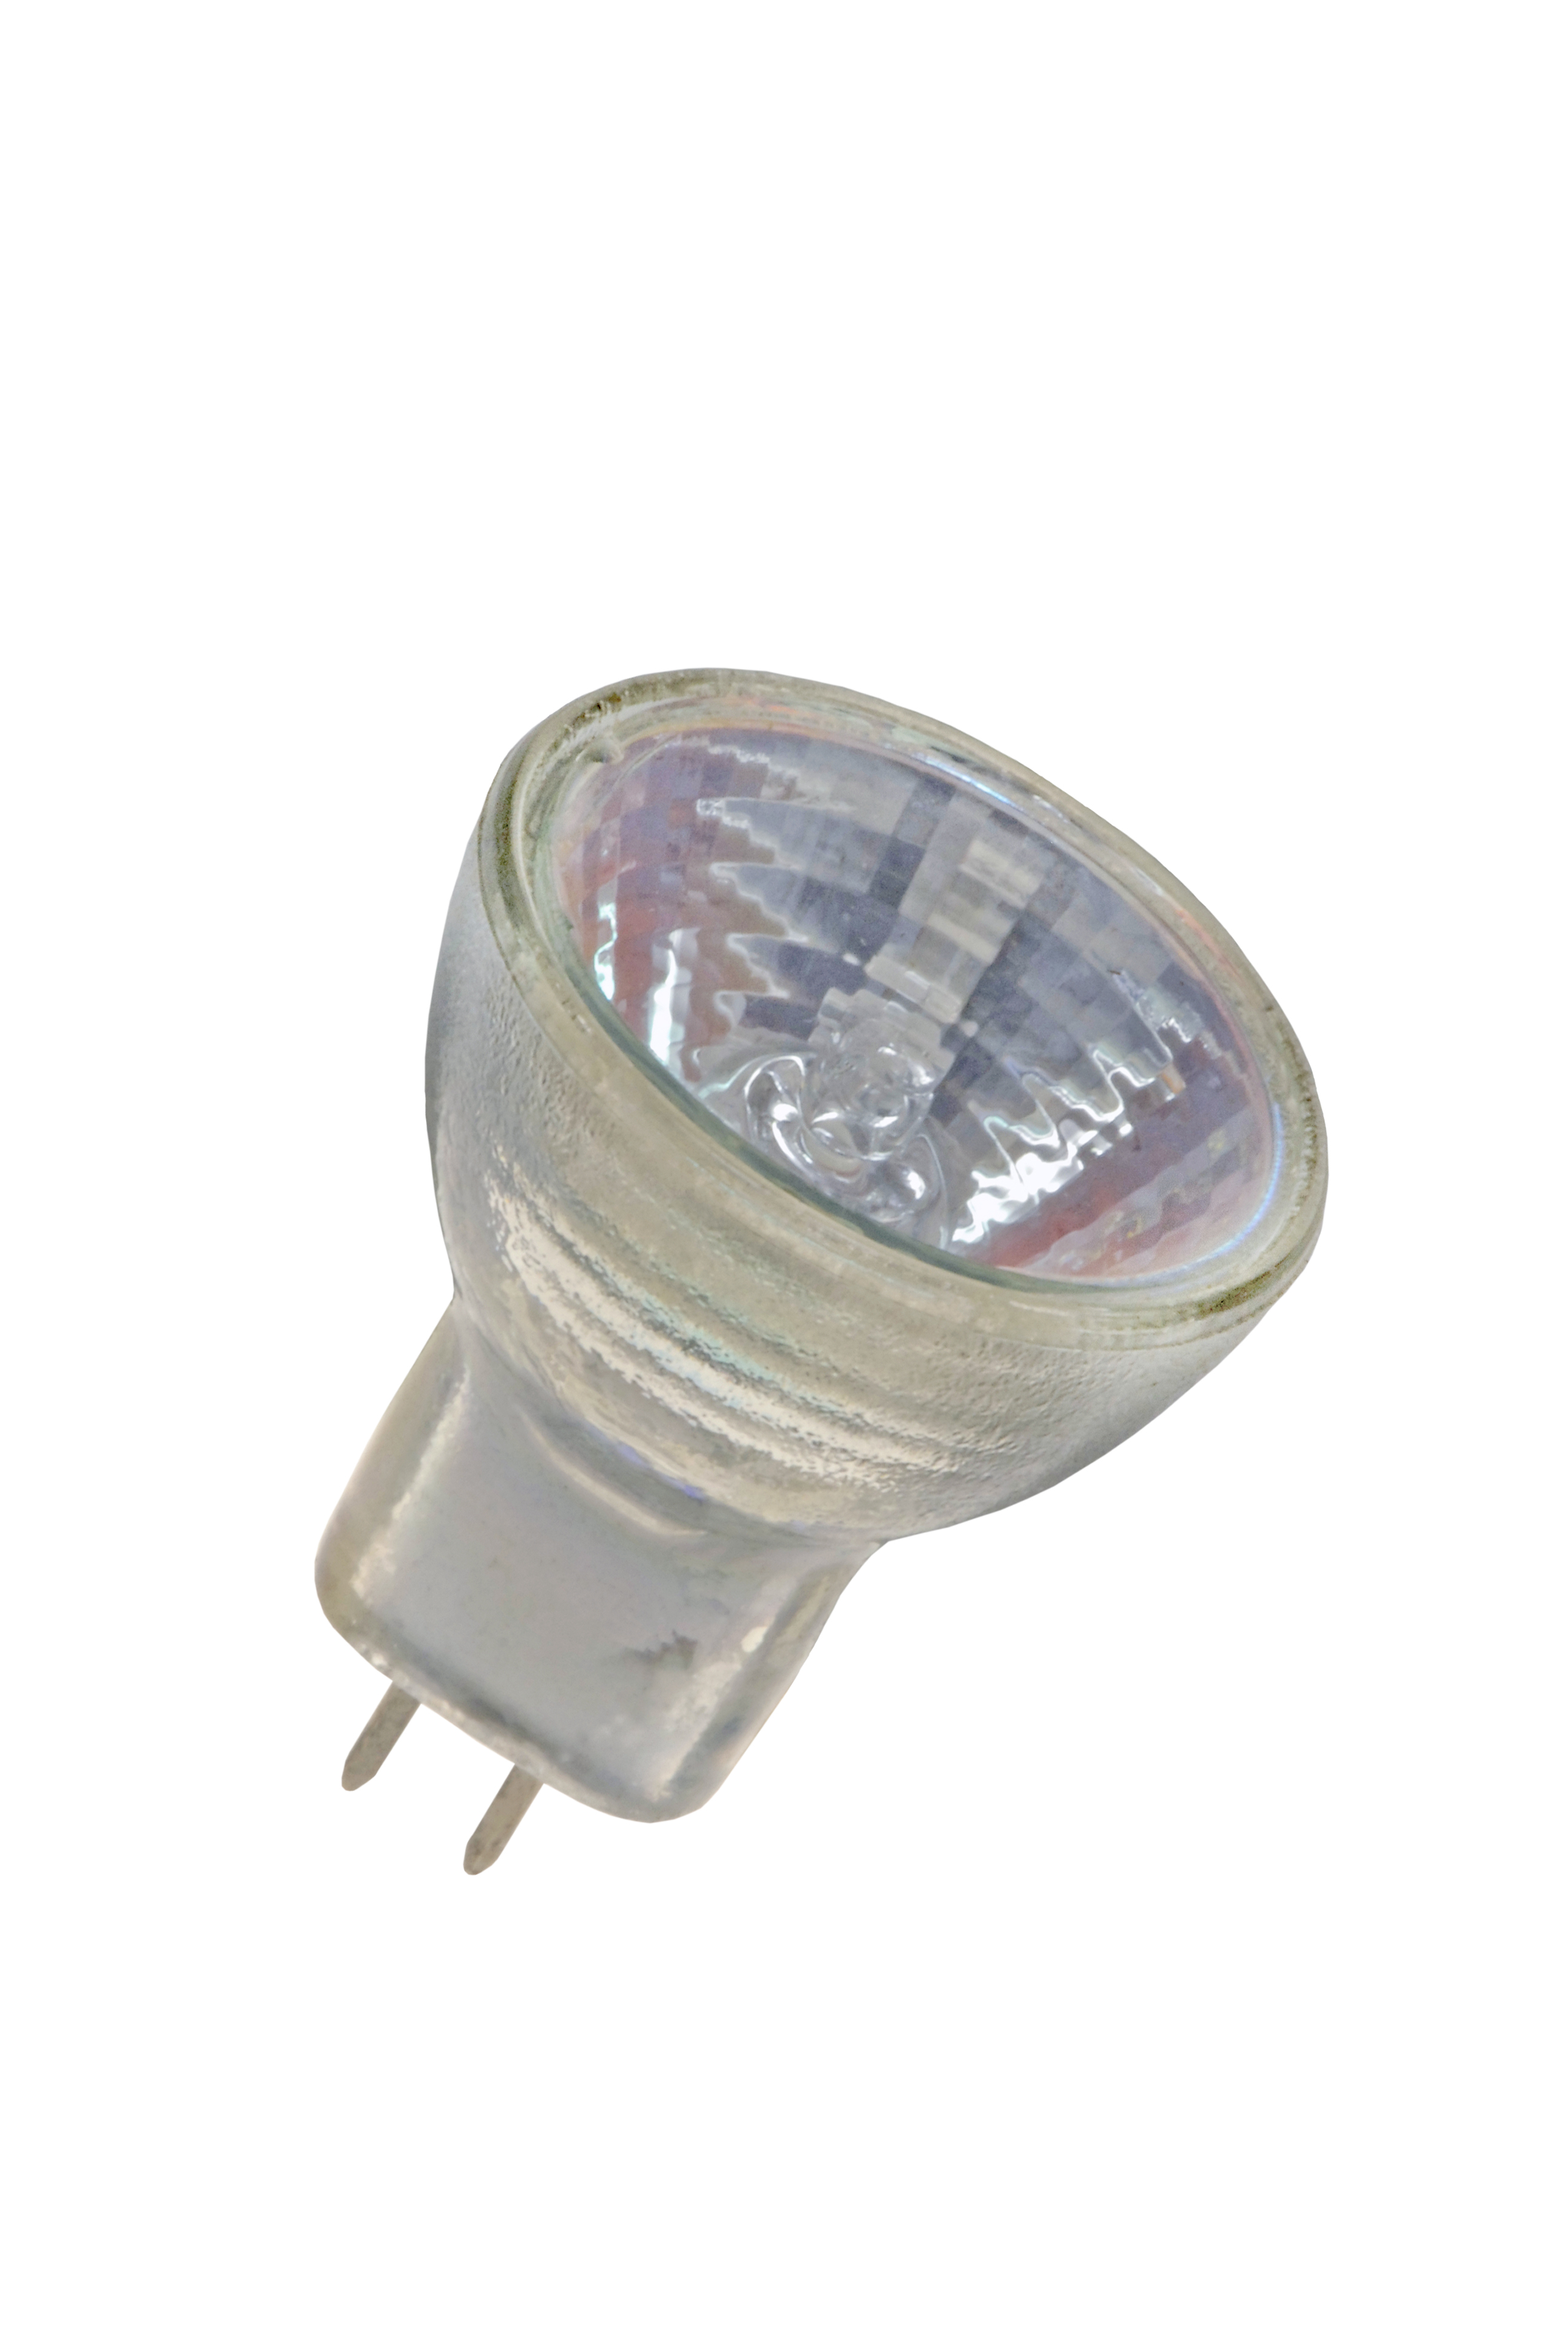 10 x MR8 Halogène Ampoule De Lampe 25 mm 12 V 20 W 